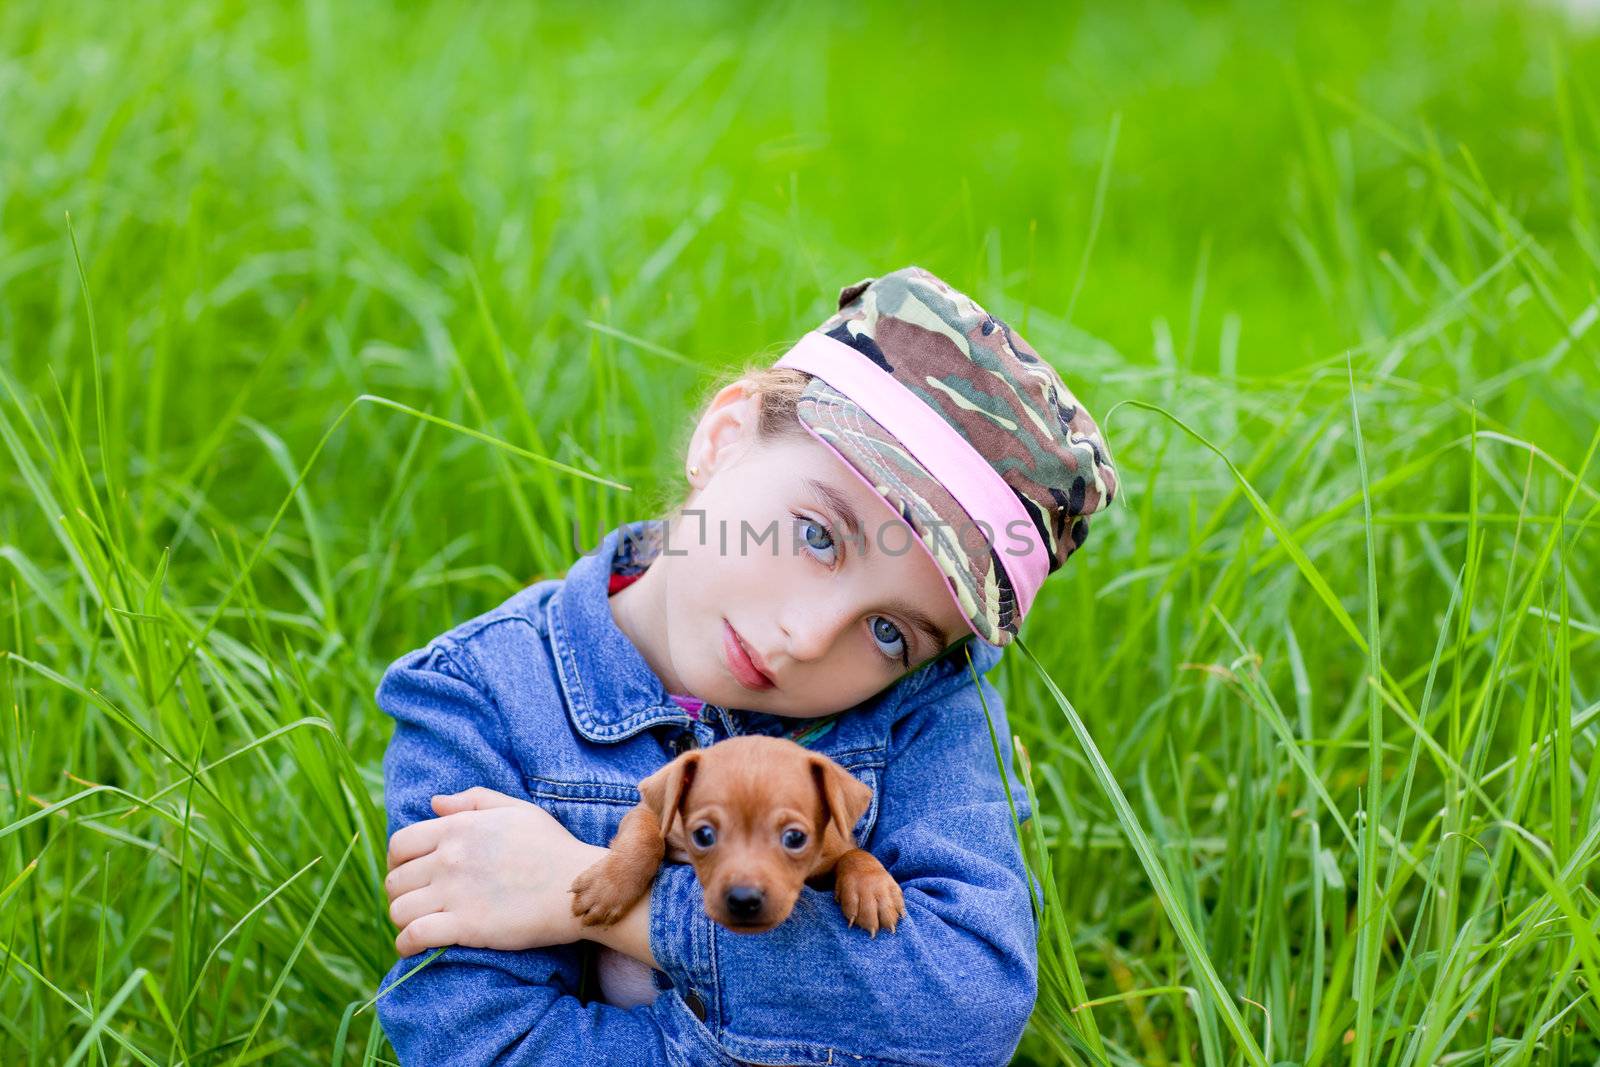 little girl with pet puppy mascot mini pinscher in outdoor green grass